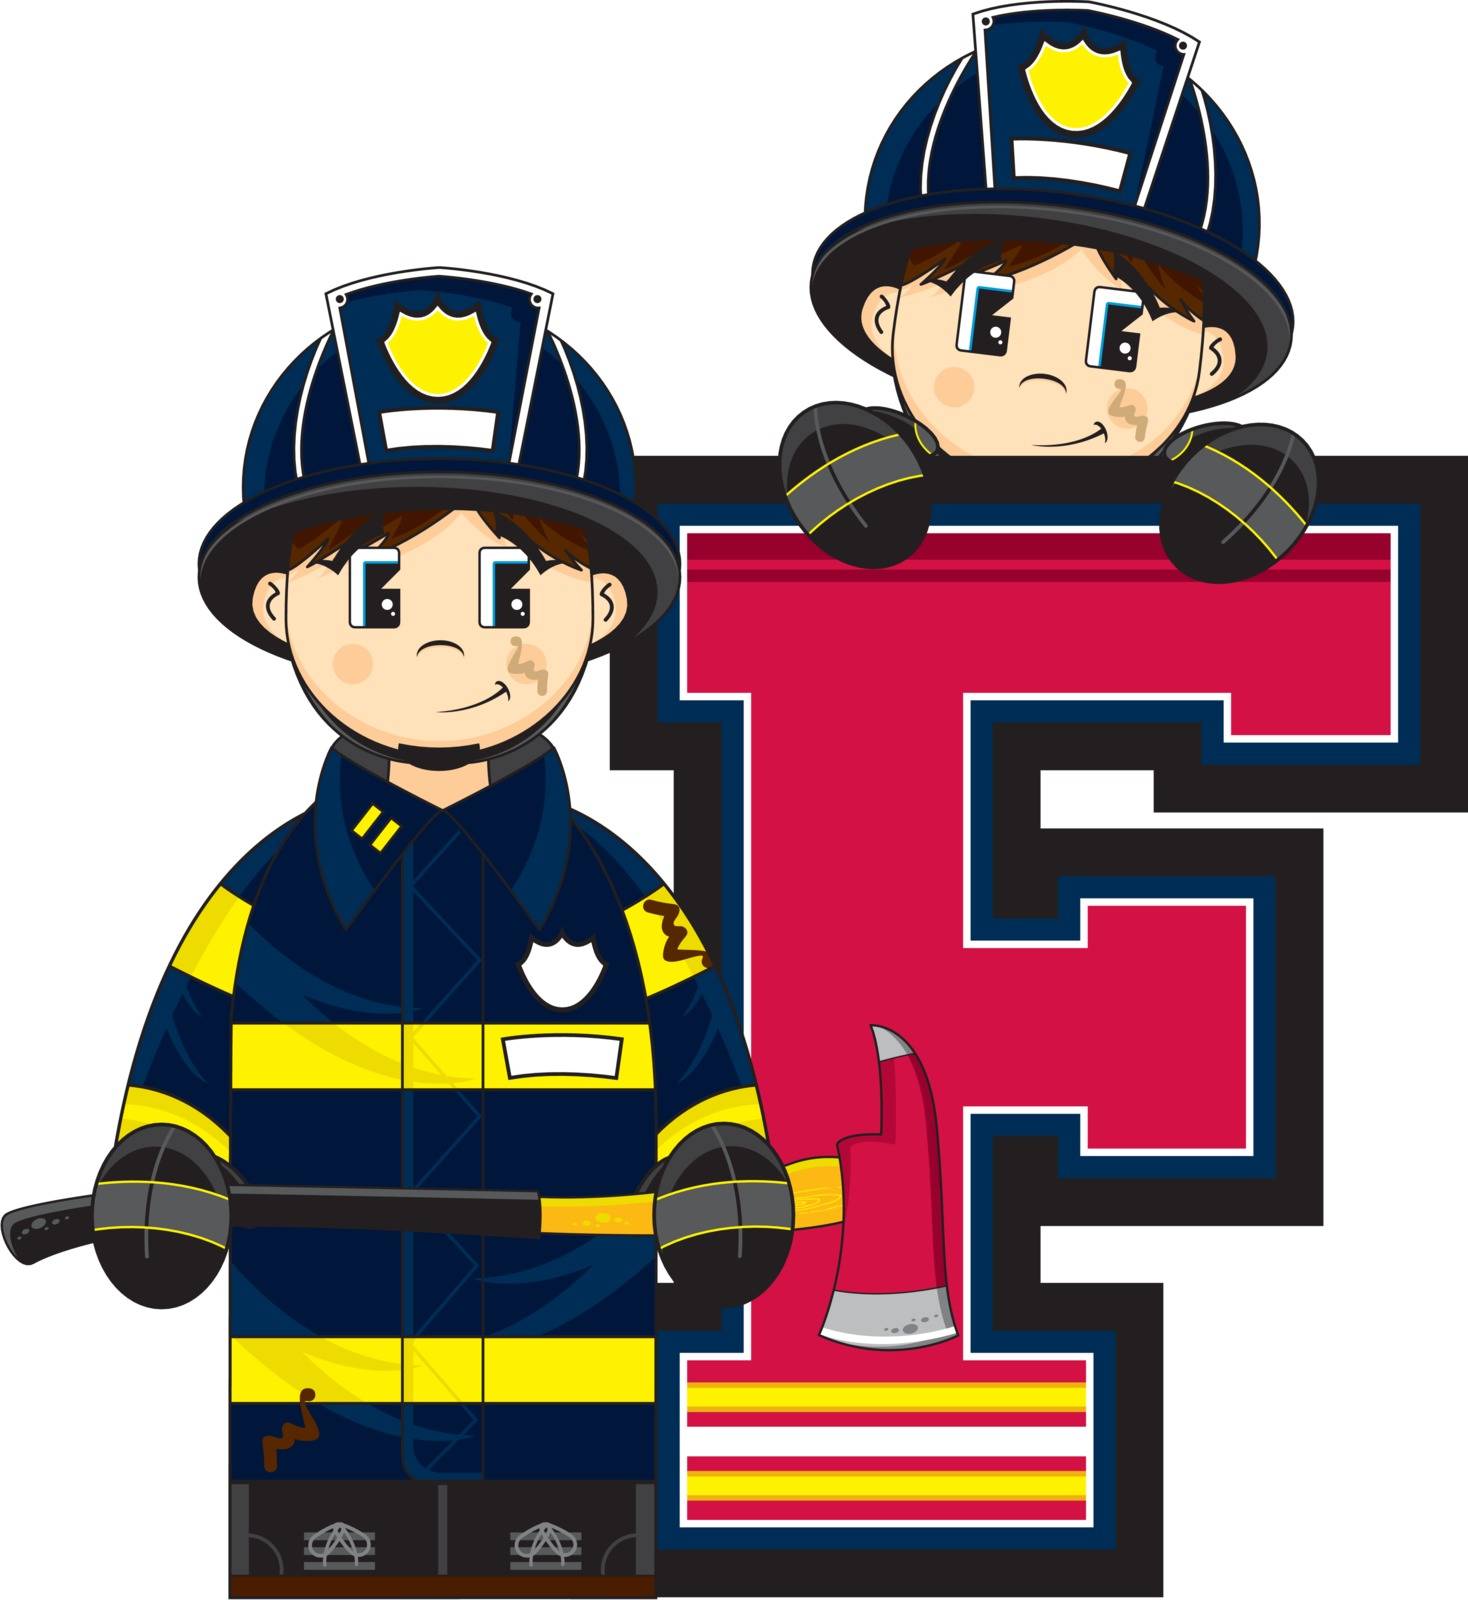 F is for Fireman by markmurphycreative